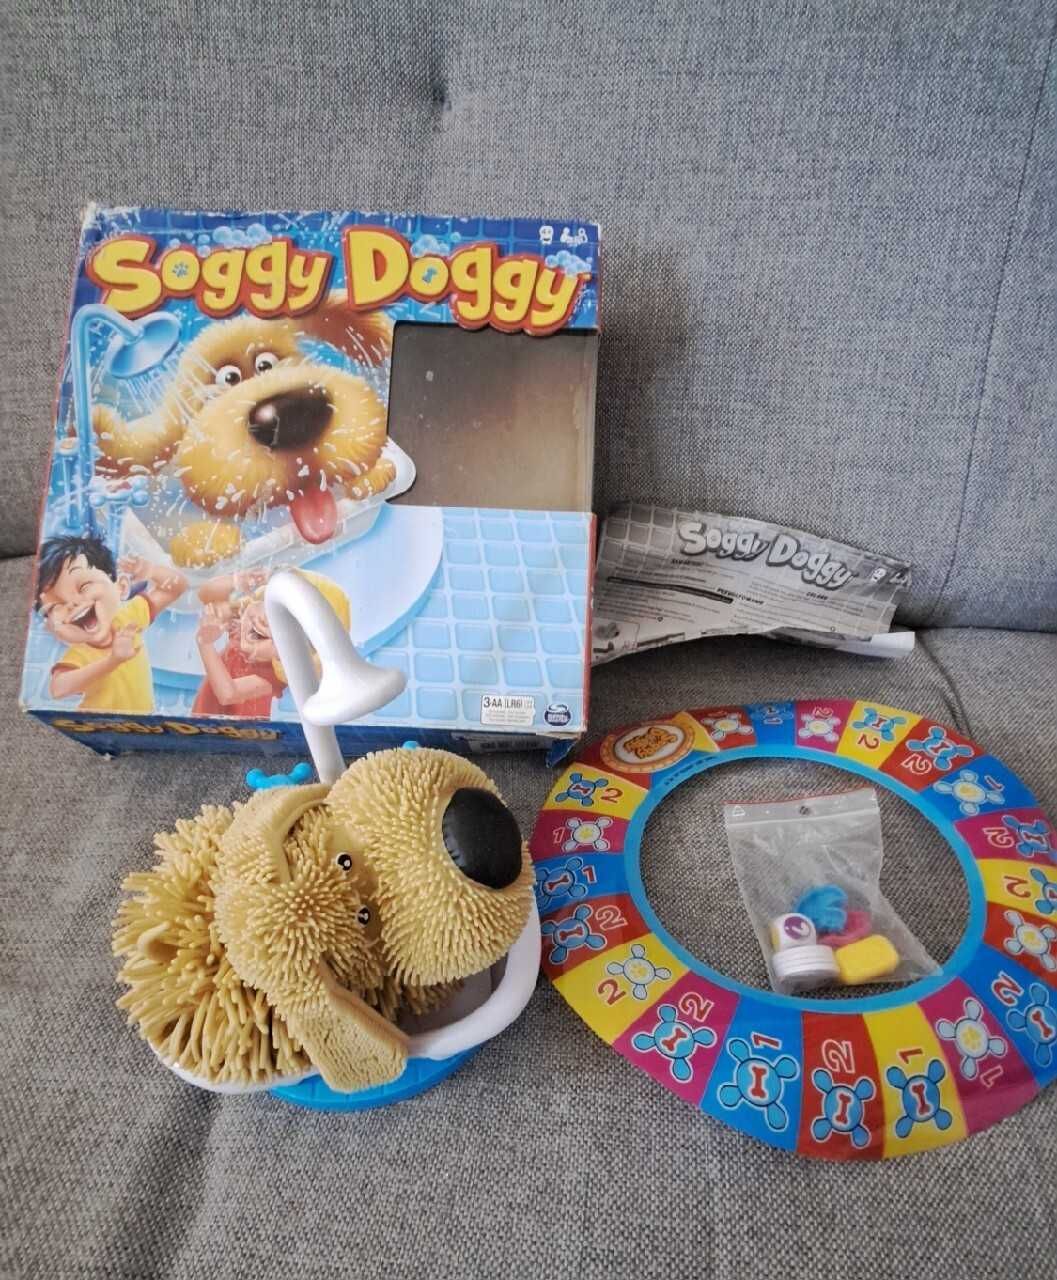 Gra Soggy Doggy używana